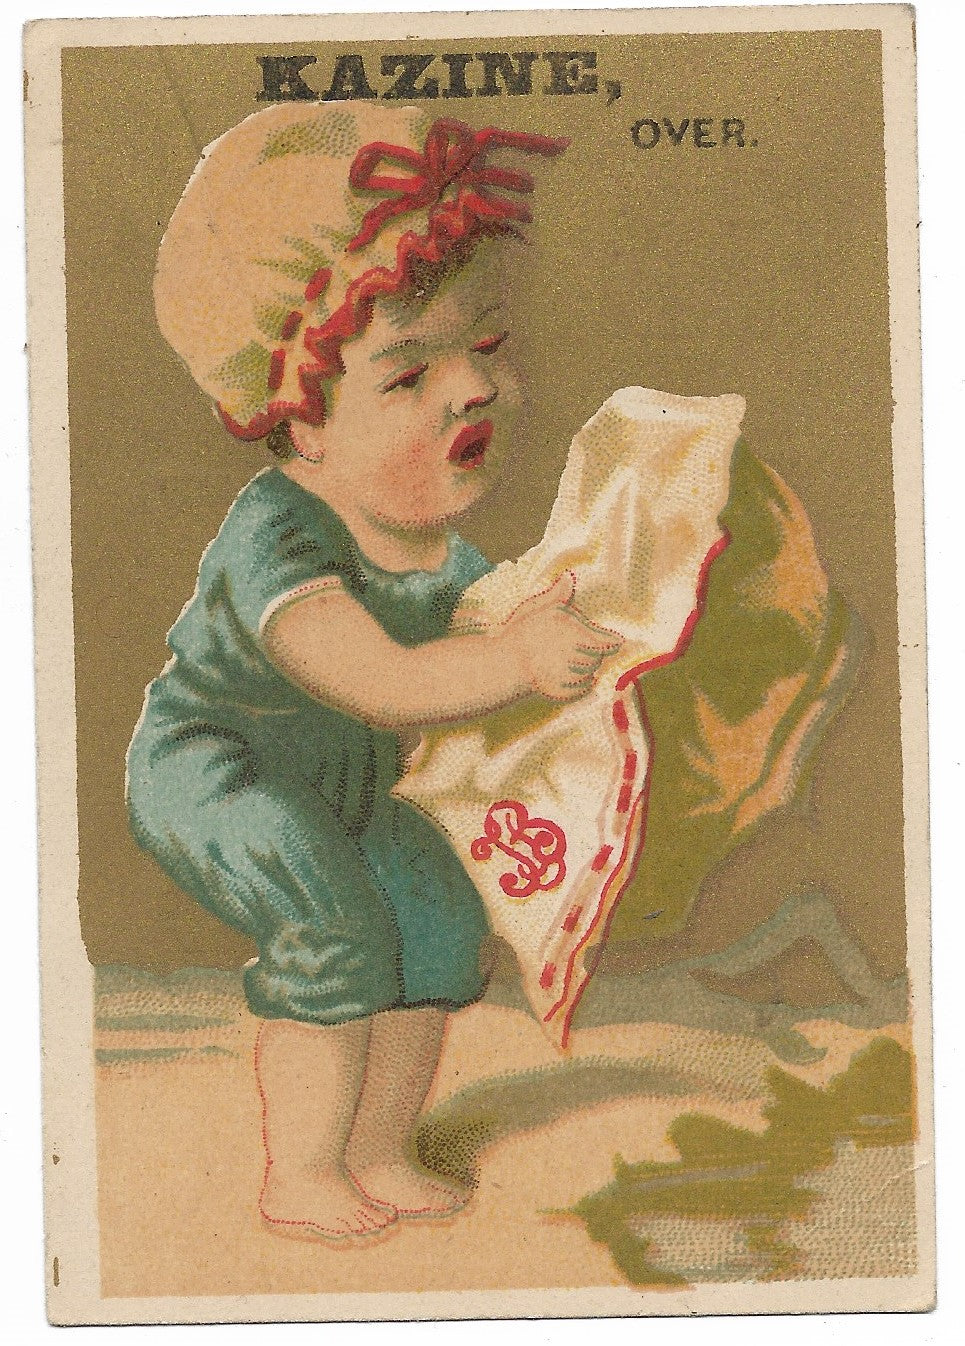 Kazine Washing Powder (Baby Girl) Antique Trade Card - 3" x 4.5"